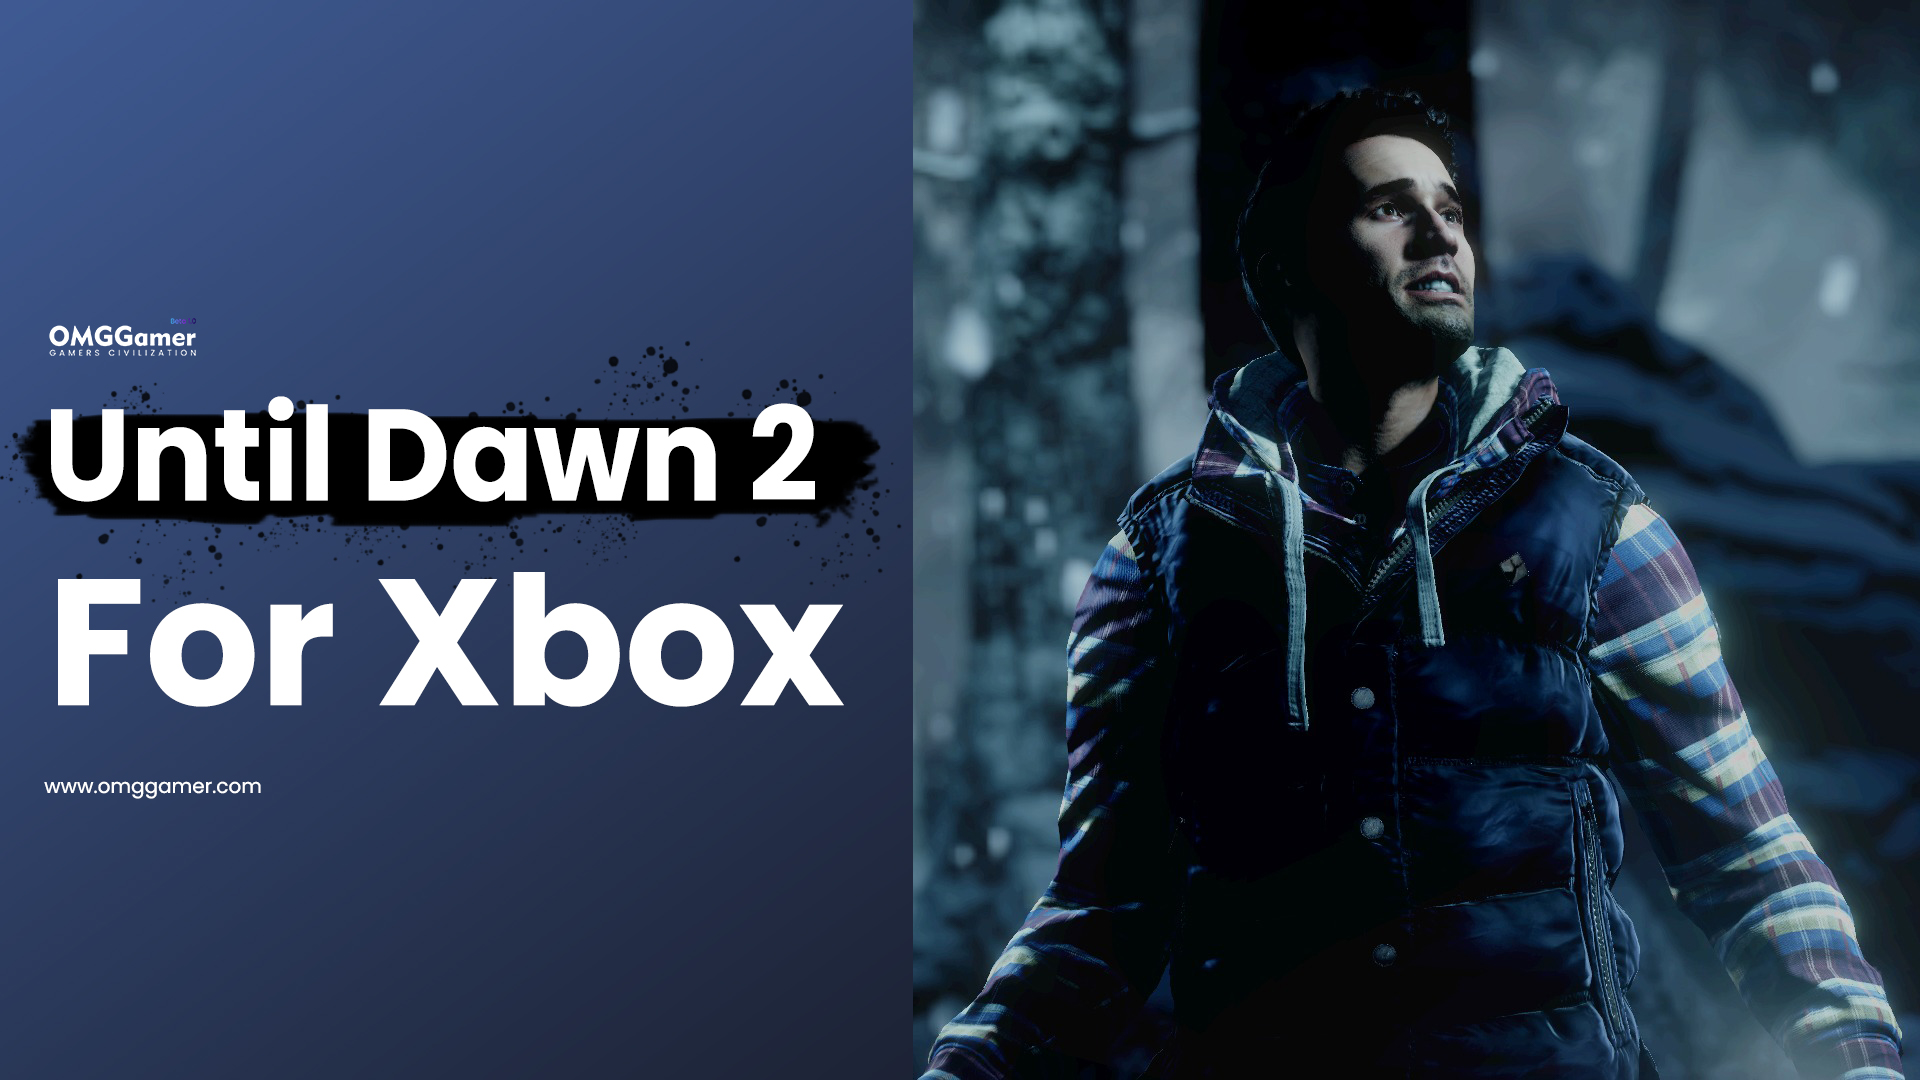 Until Dawn 2 for Xbox